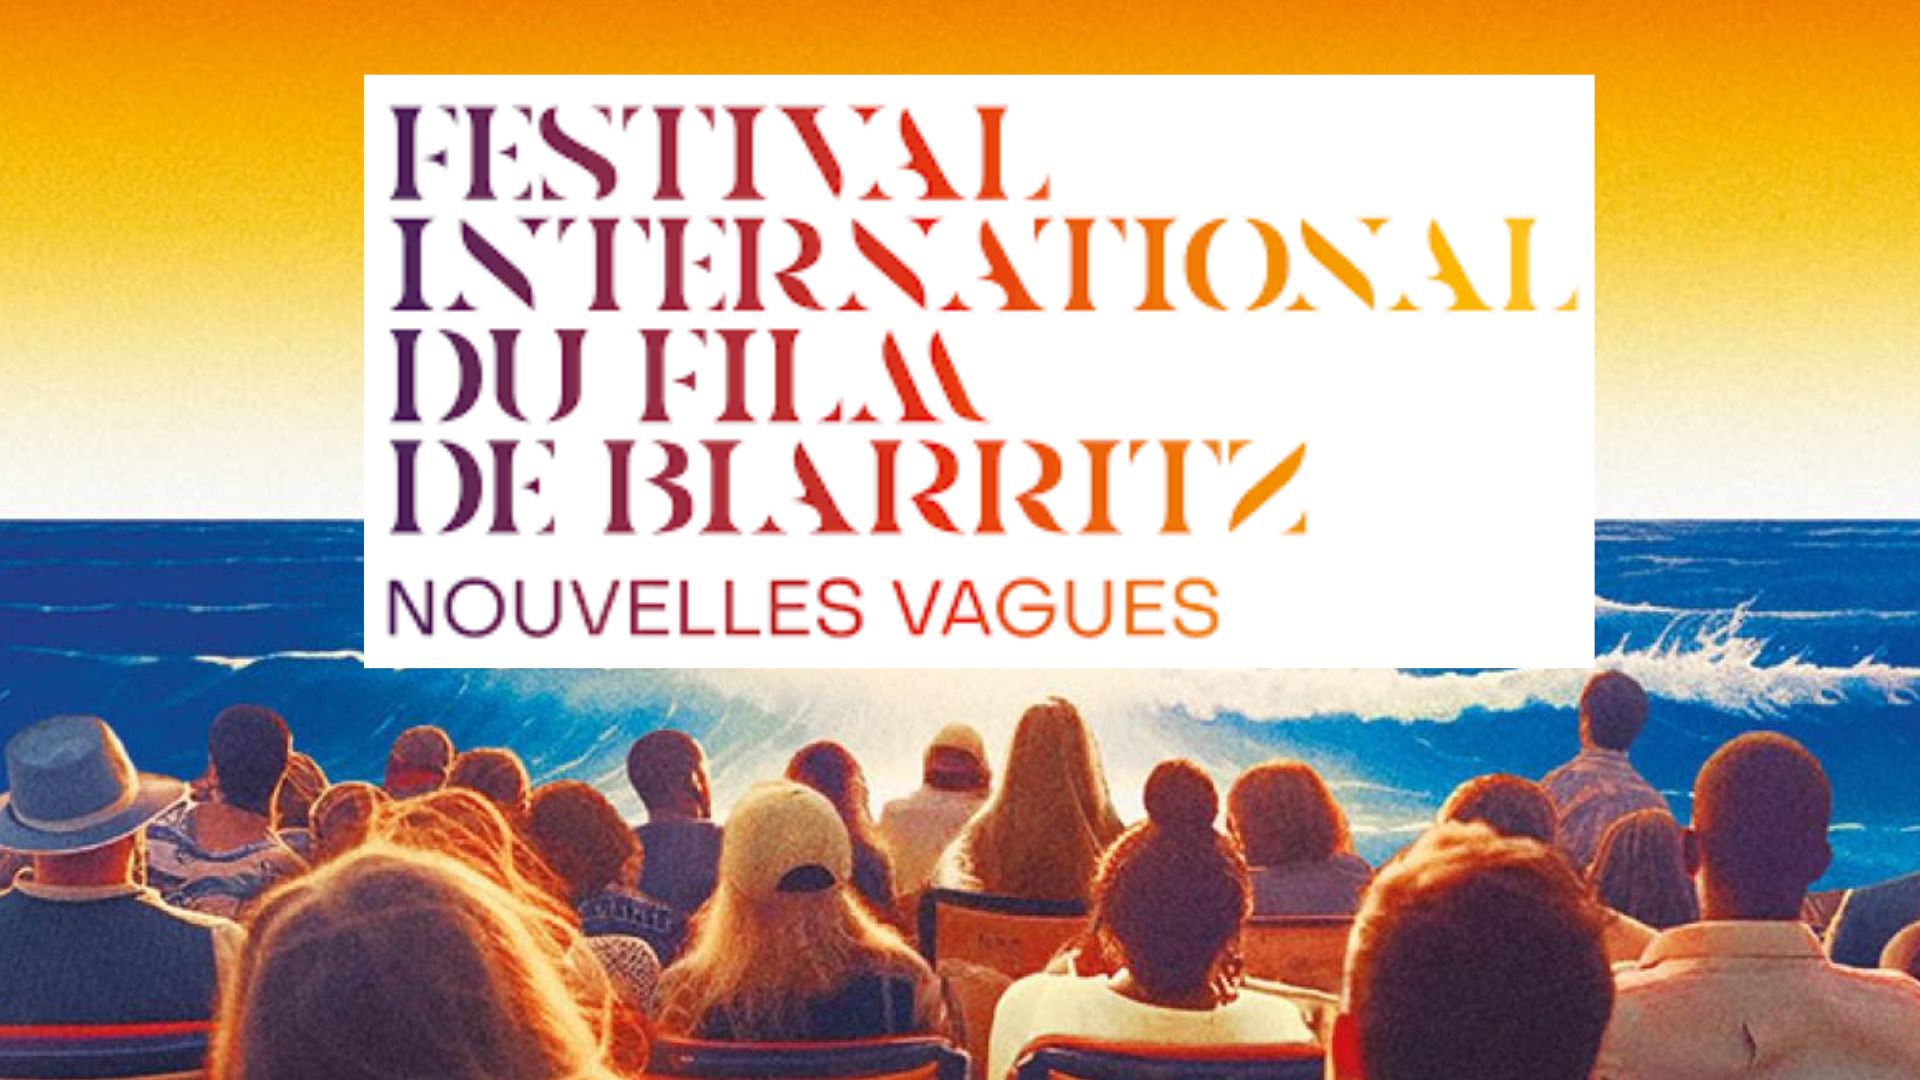 Mediakwest La CST le nouveau Festival de Biarritz